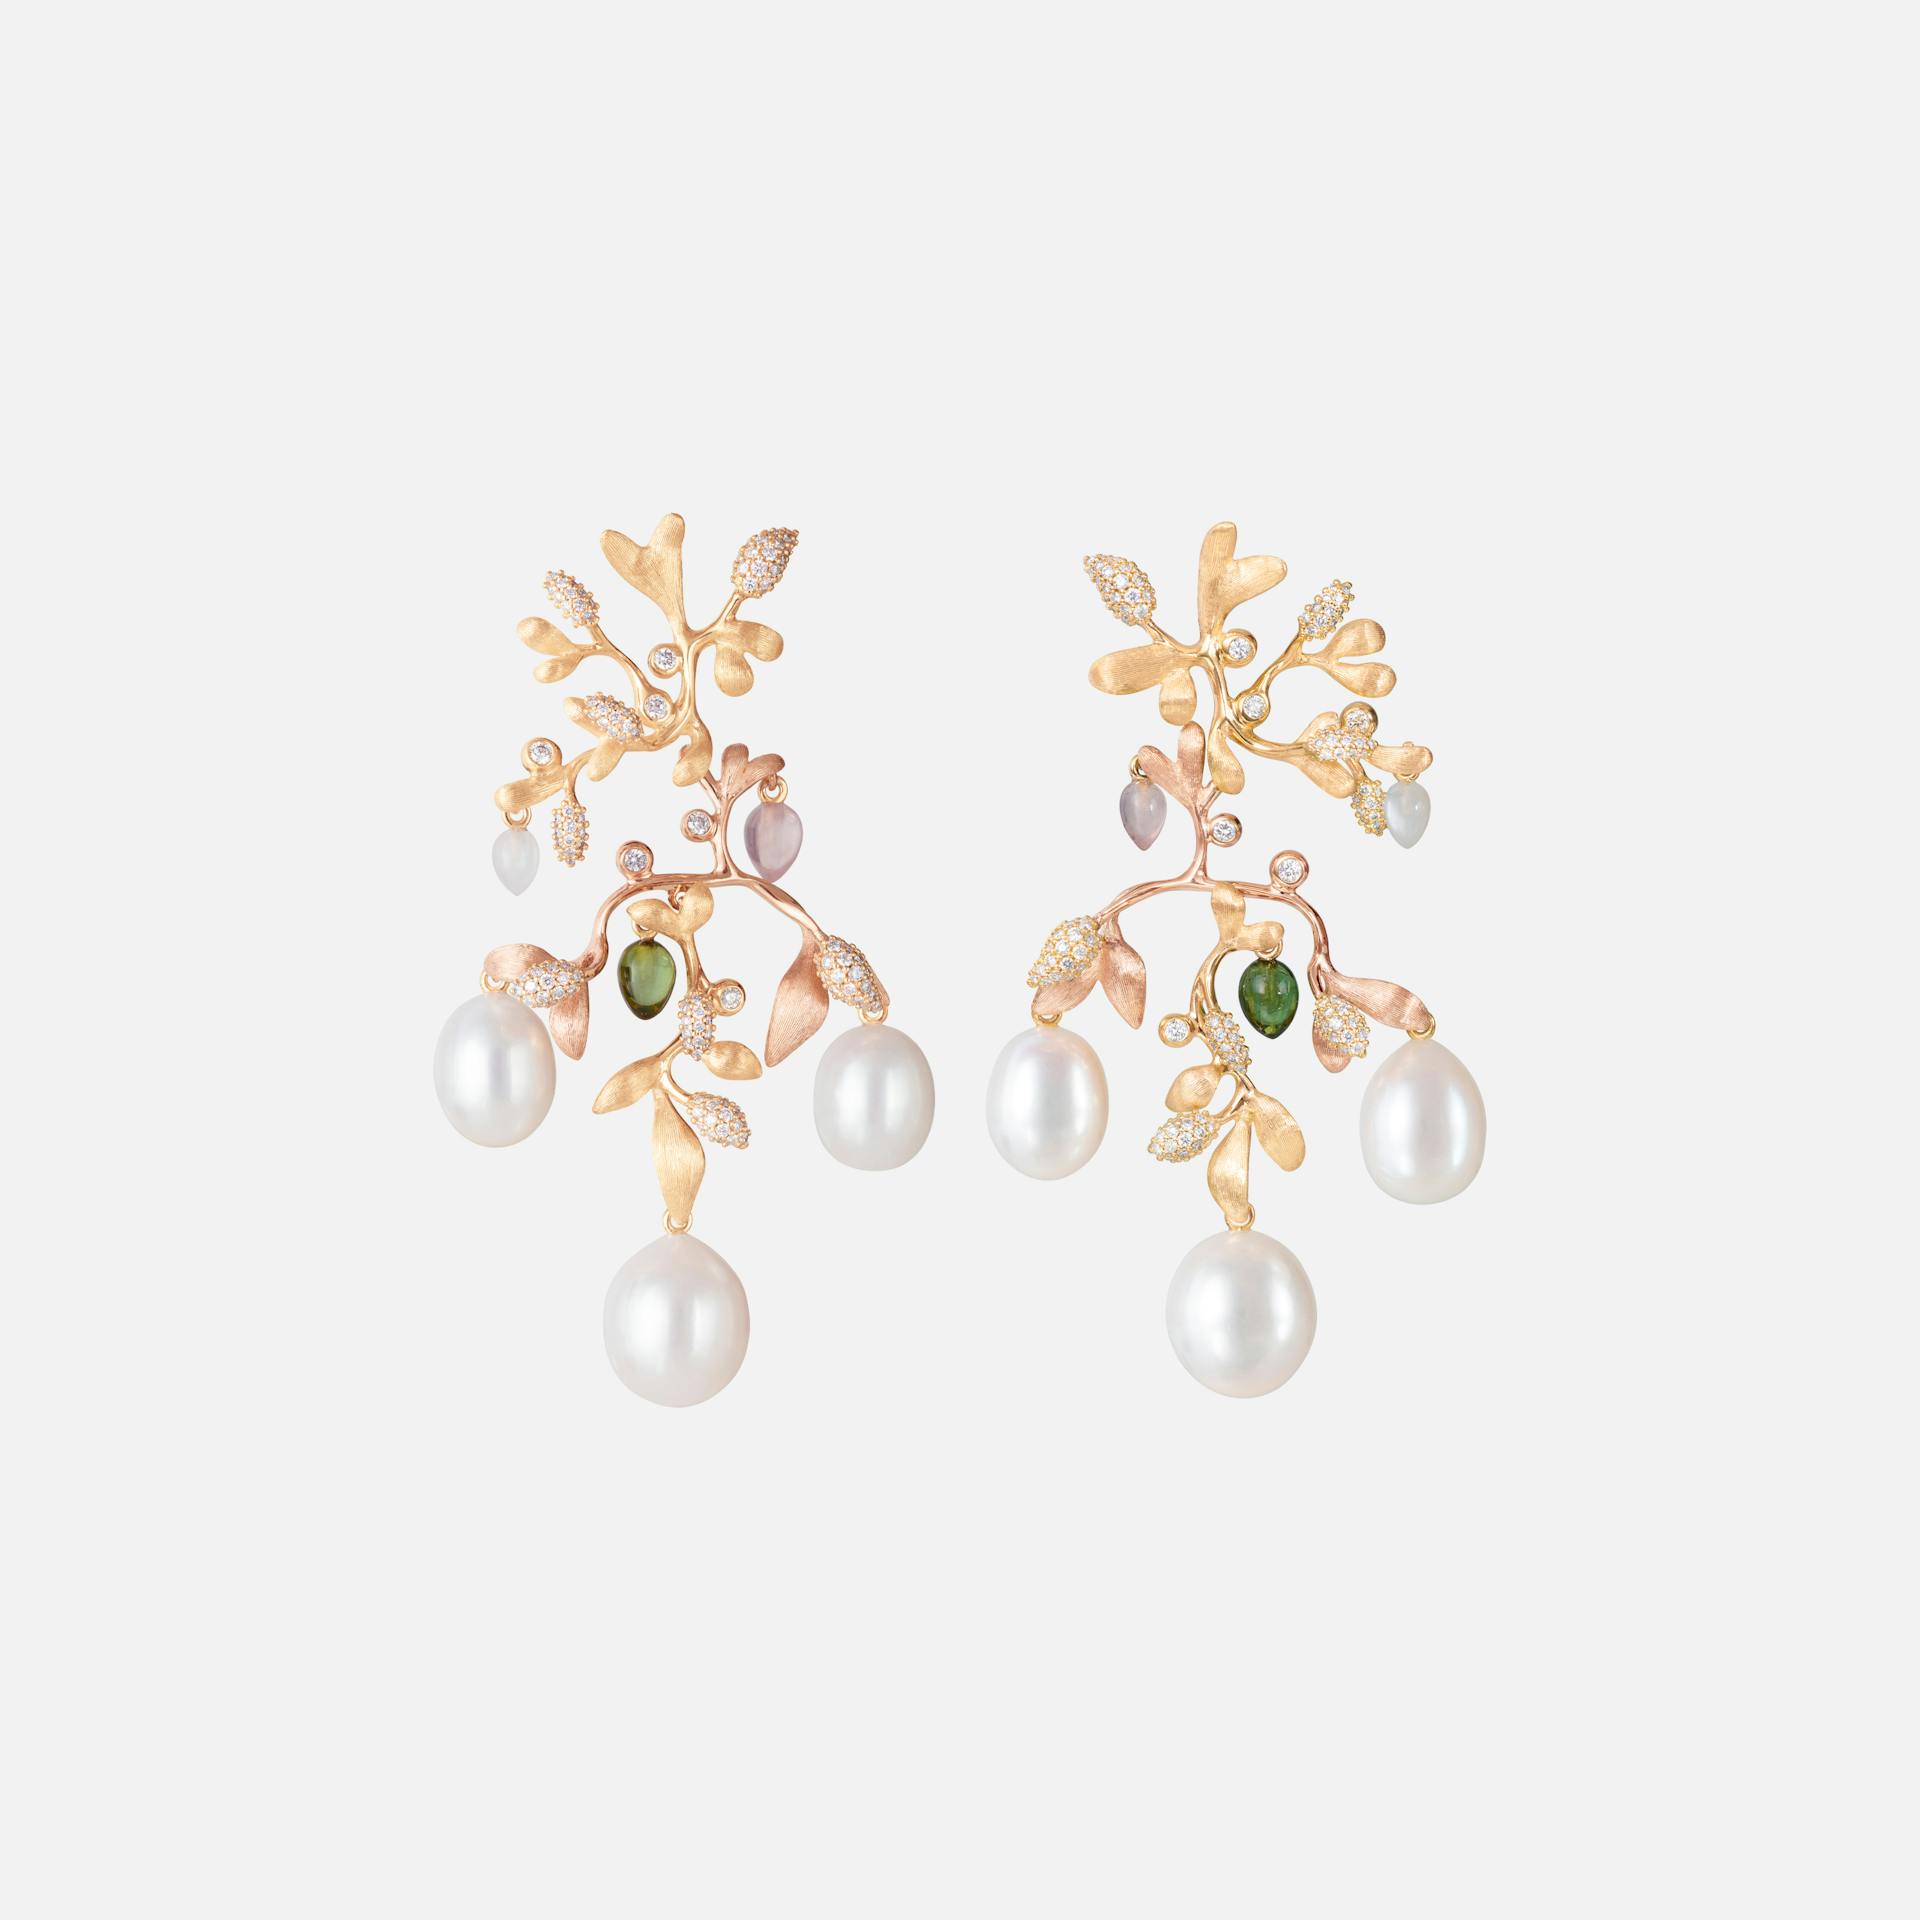 Gipsy Earrings in 18kt Gold w Diamonds, Pearls, Quartz & Tourmaline | Ole Lynggaard Copenhagen